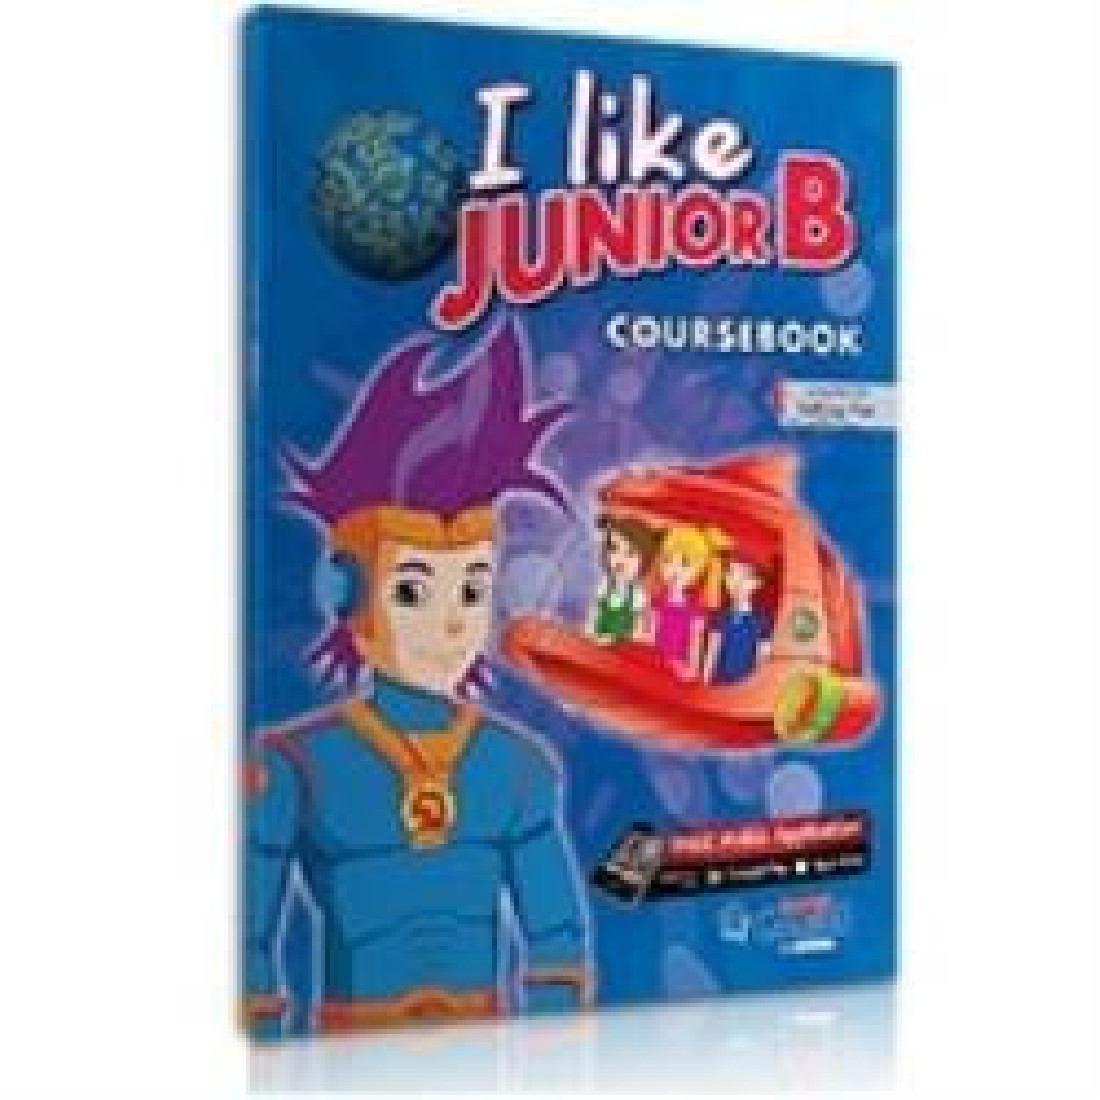 I LIKE JUNIOR B COURSEBOOK + i-book